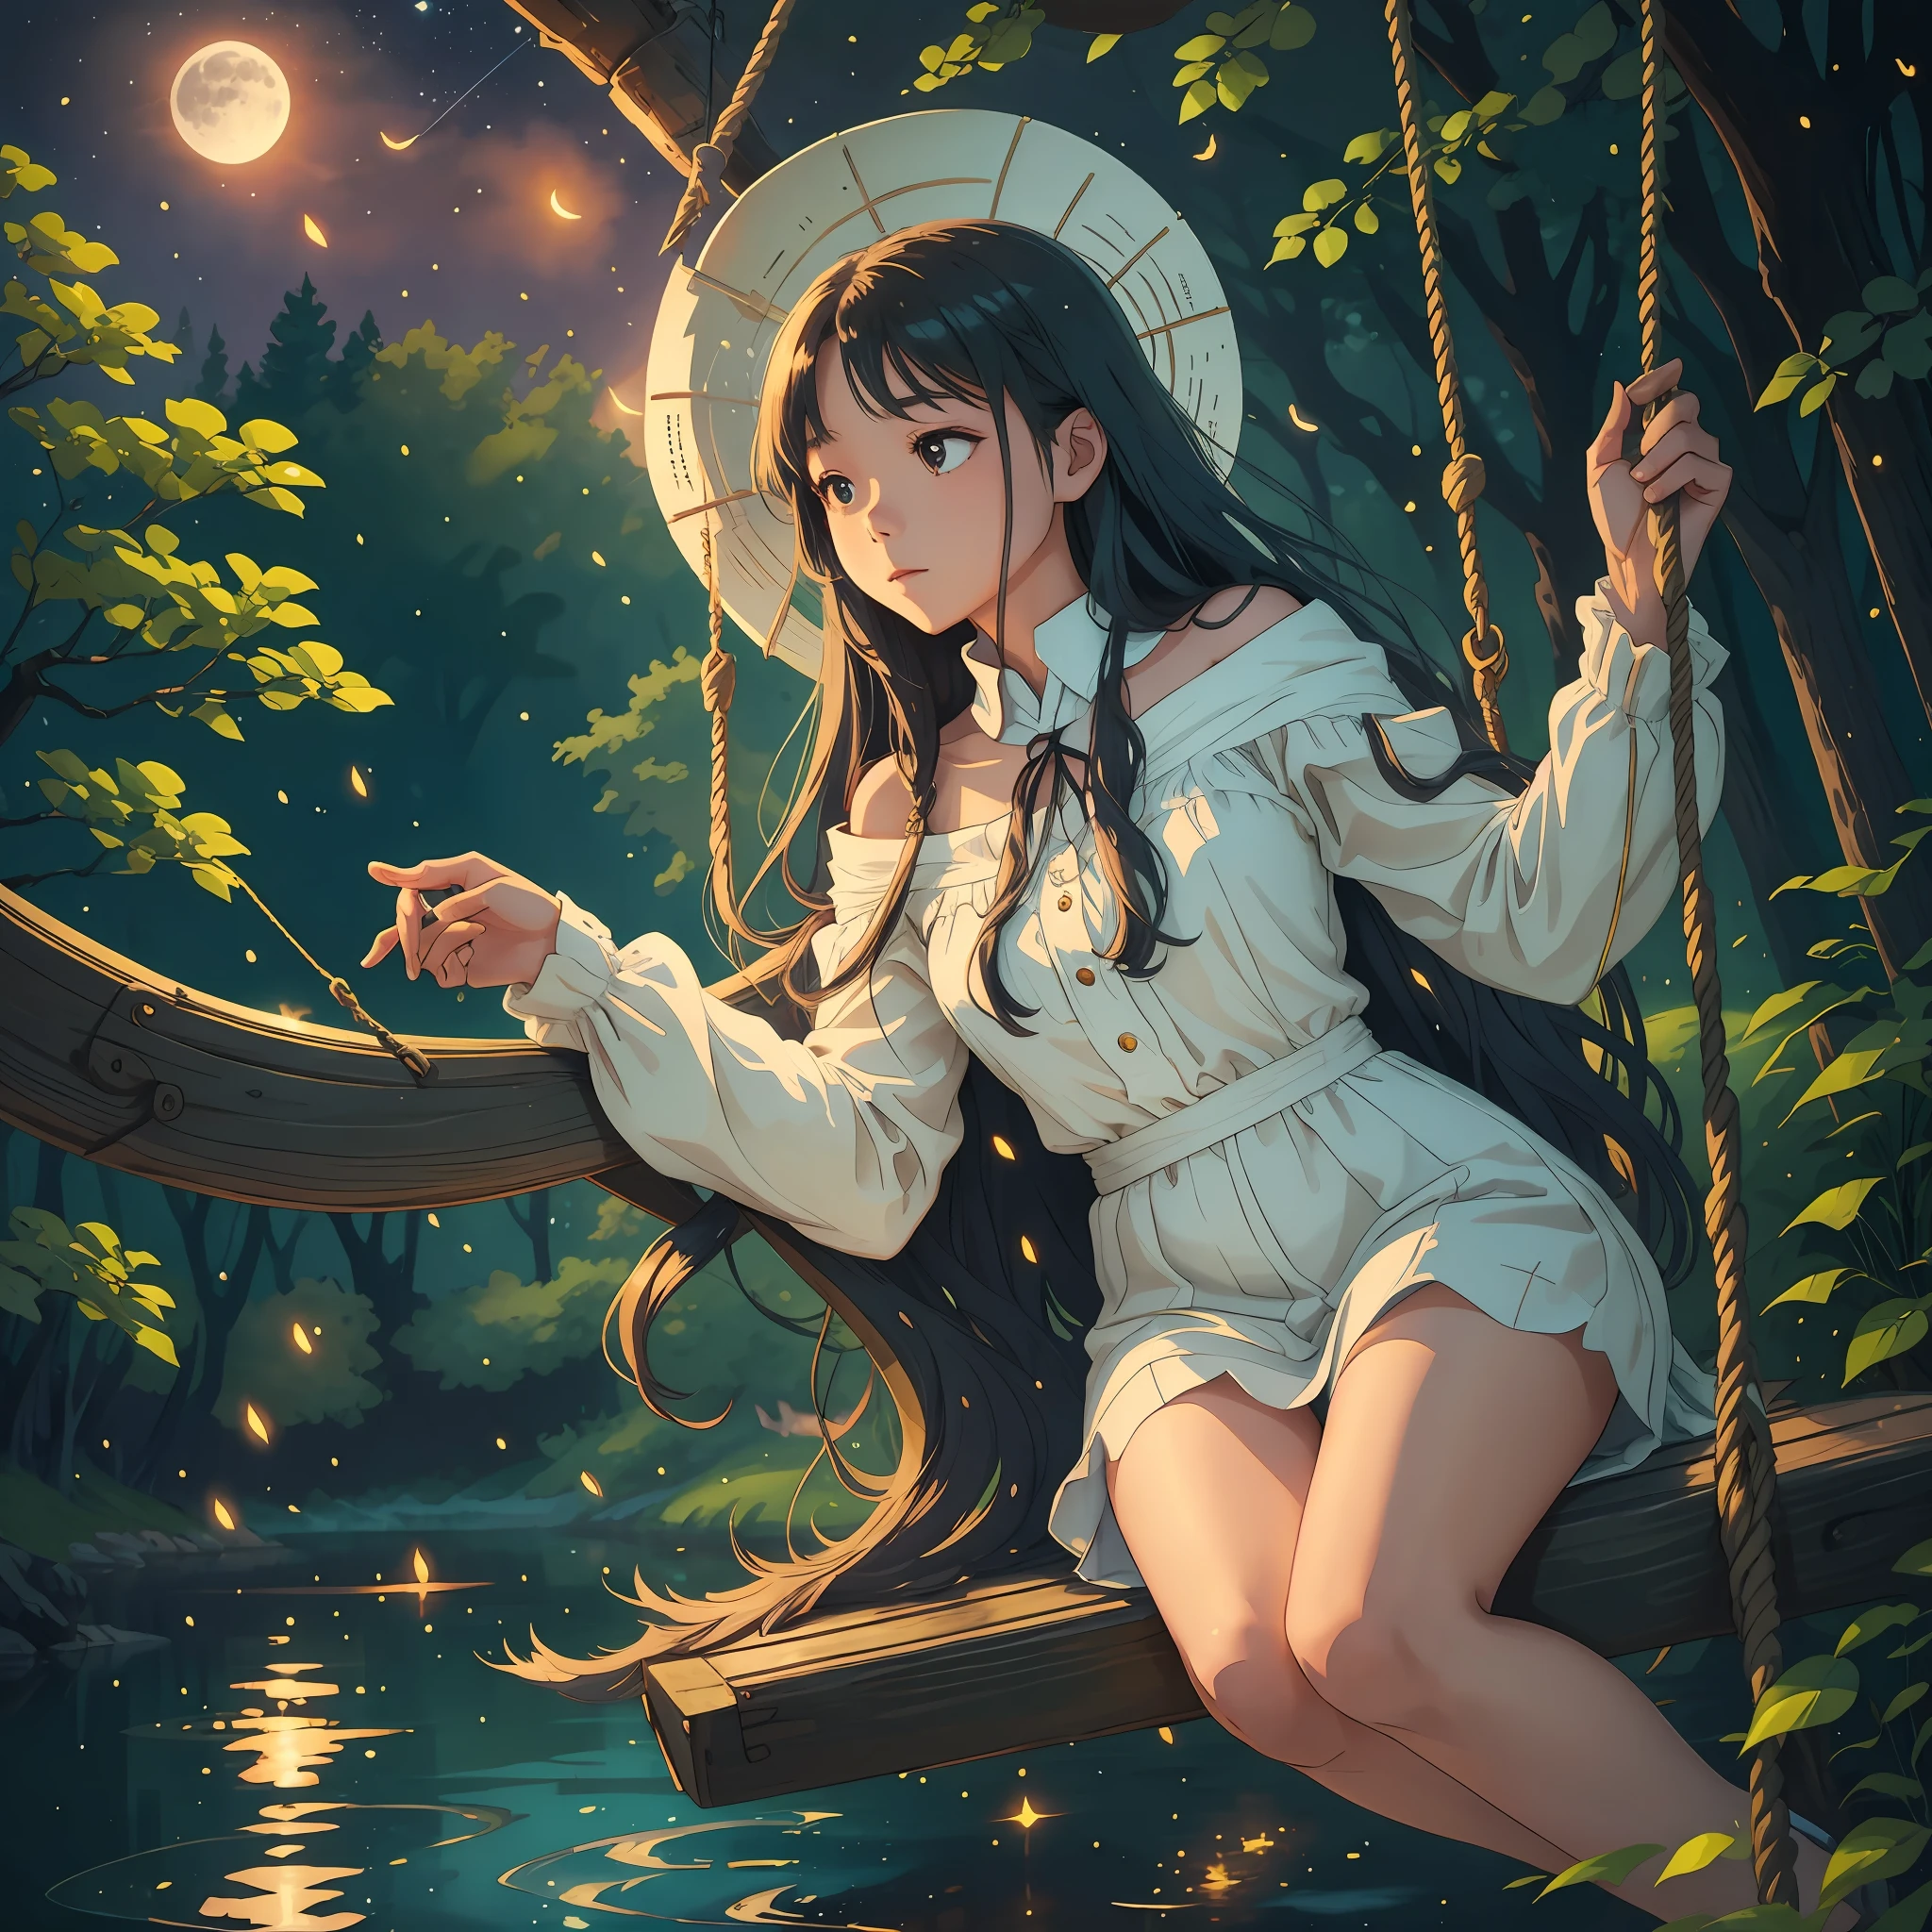 La jeune fille aux longs cheveux flottants est assise sur une balançoire avec un lac étincelant derrière son dos, le clair de lune se répand sur le lac, entouré de forêts et de lucioles volant --auto --s2